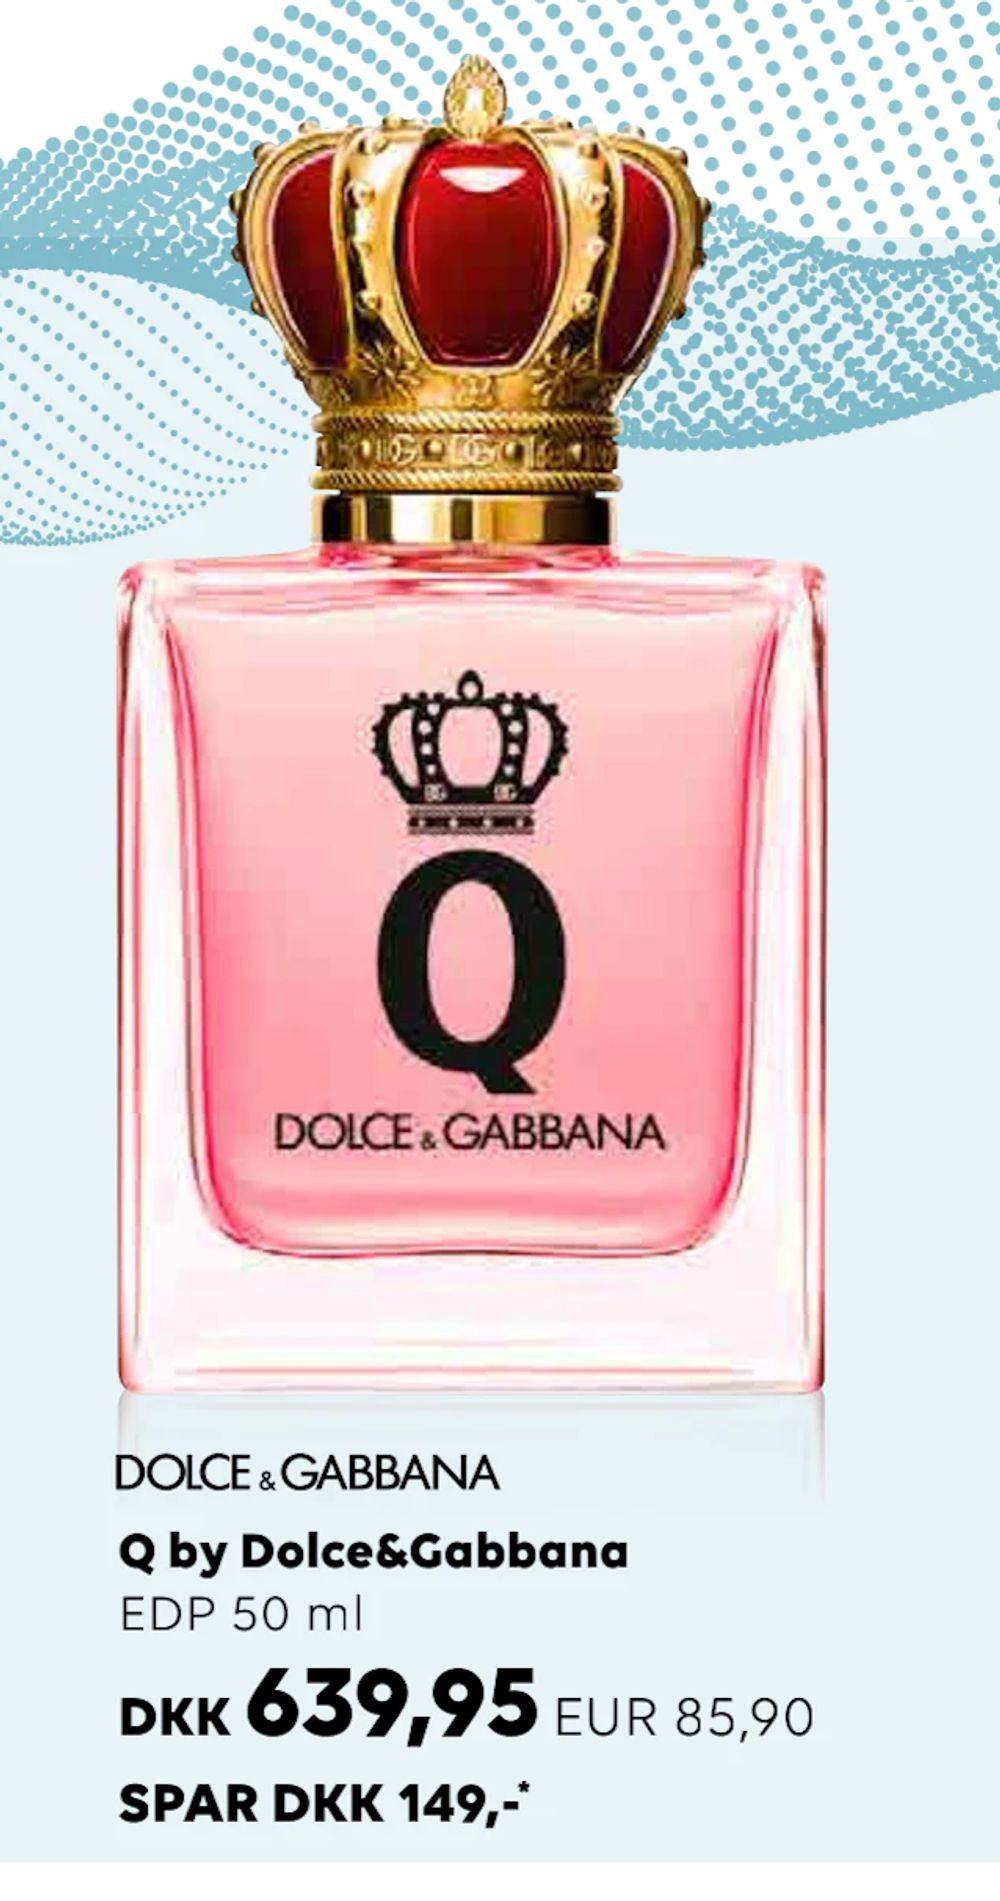 Erbjudanden på Q by Dolce&Gabbana från Scandlines Travel Shop för 85,90 €